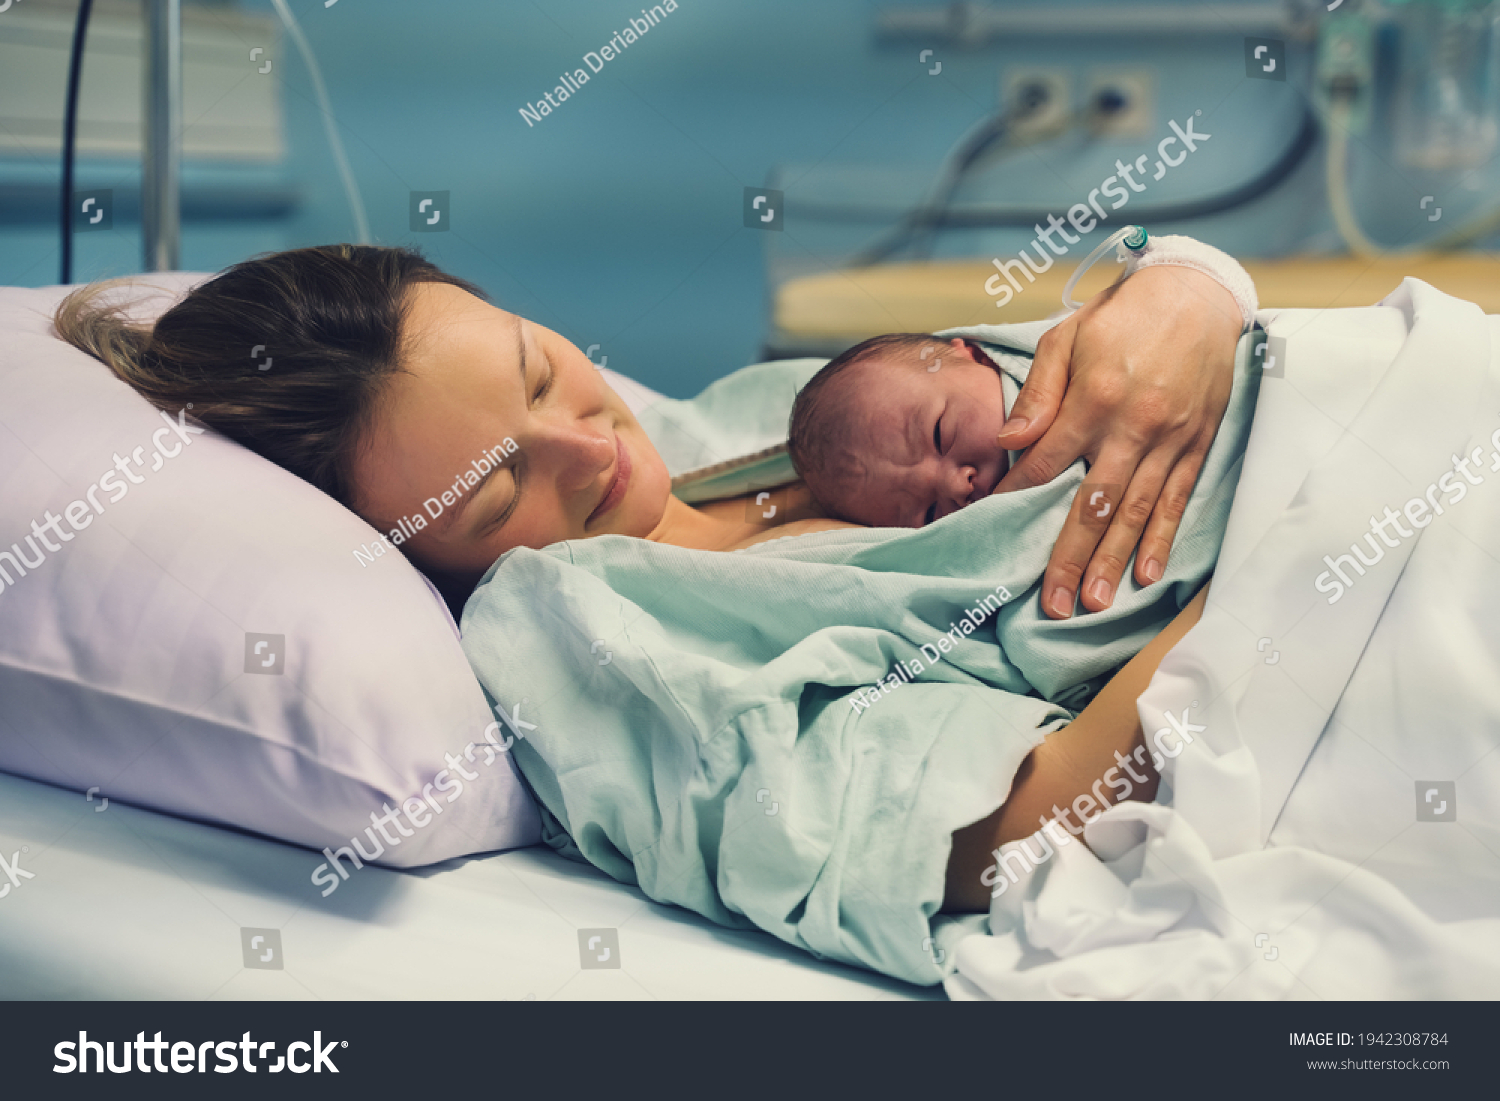 お母さんと生まれたて 産科病院での出産 出産後 生まれたばかりの赤ちゃんを抱きしめる若い母親 産む女 産後の赤ちゃん生活の最初の瞬間 の写真素材 今すぐ編集